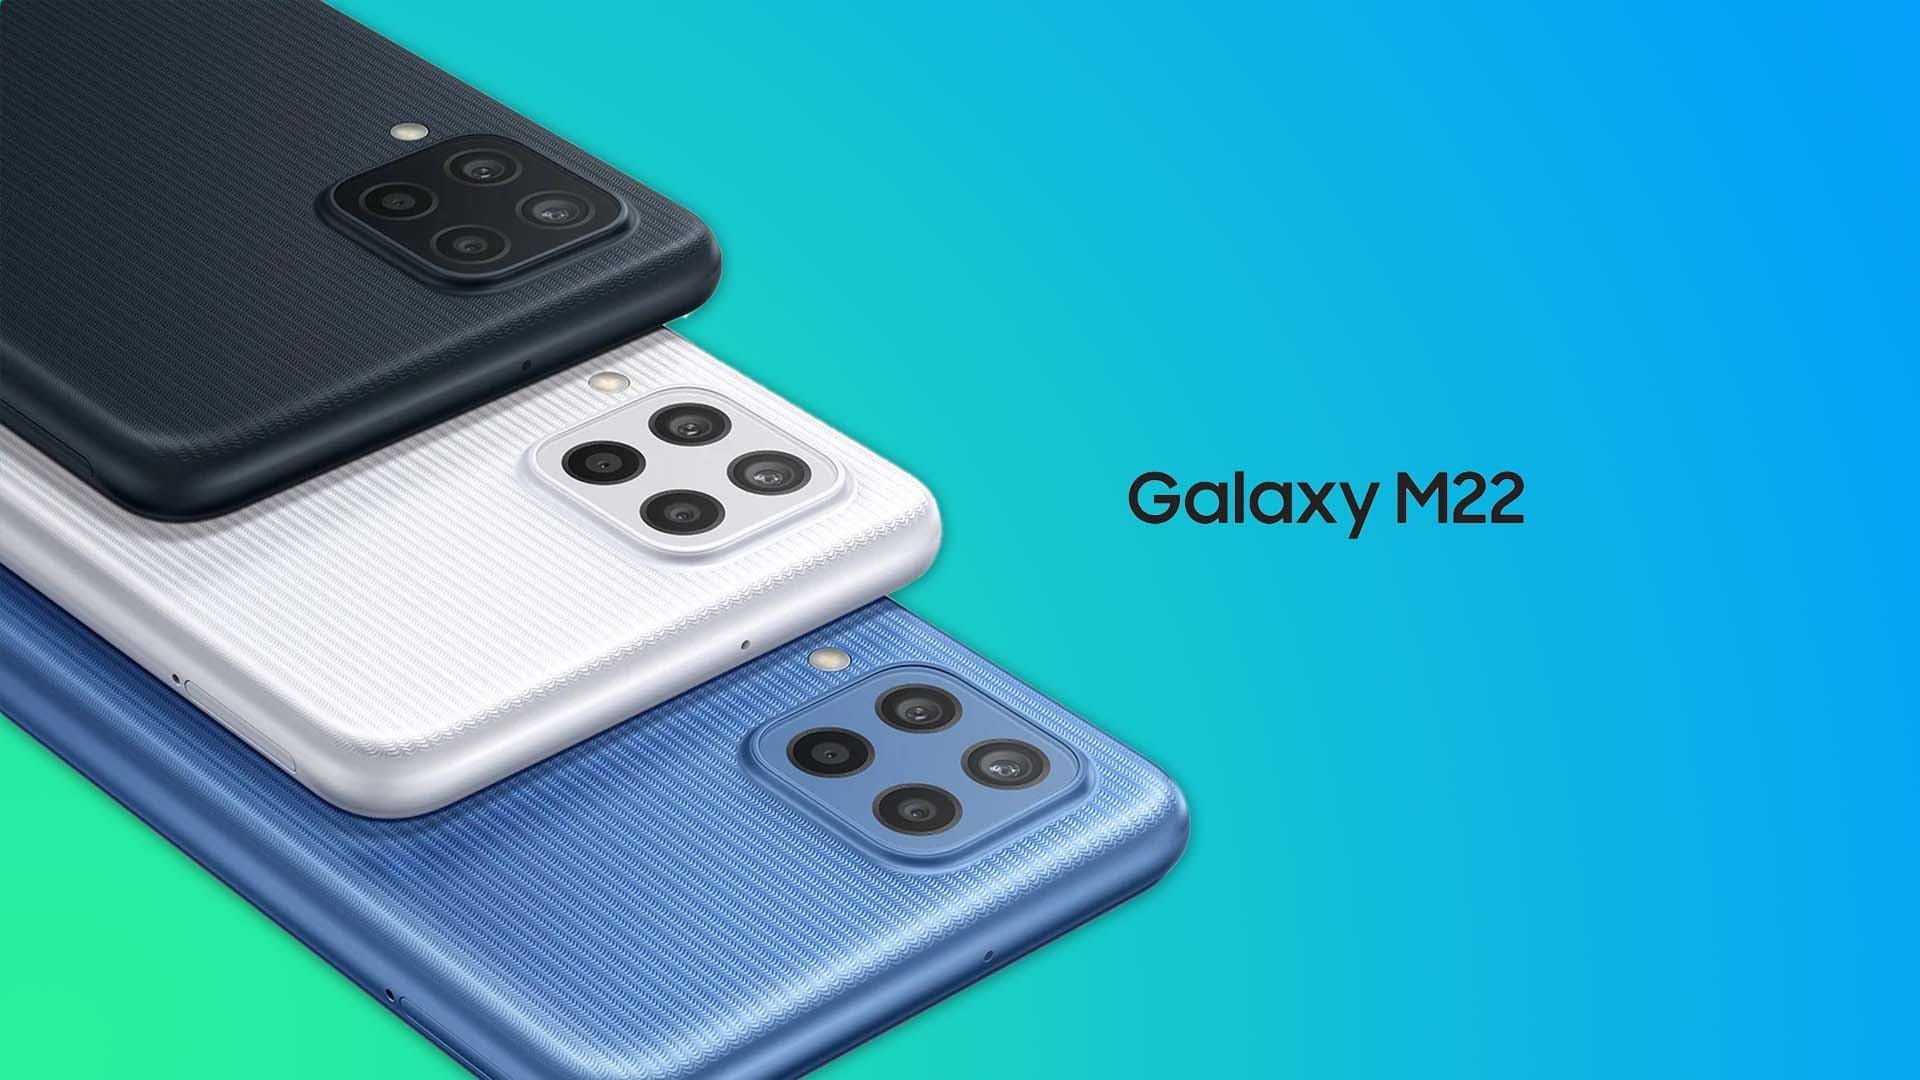 Galaxy M22 arriva in Italia: lo smartphone economico con display Super AMOLED a 90 Hz (foto)